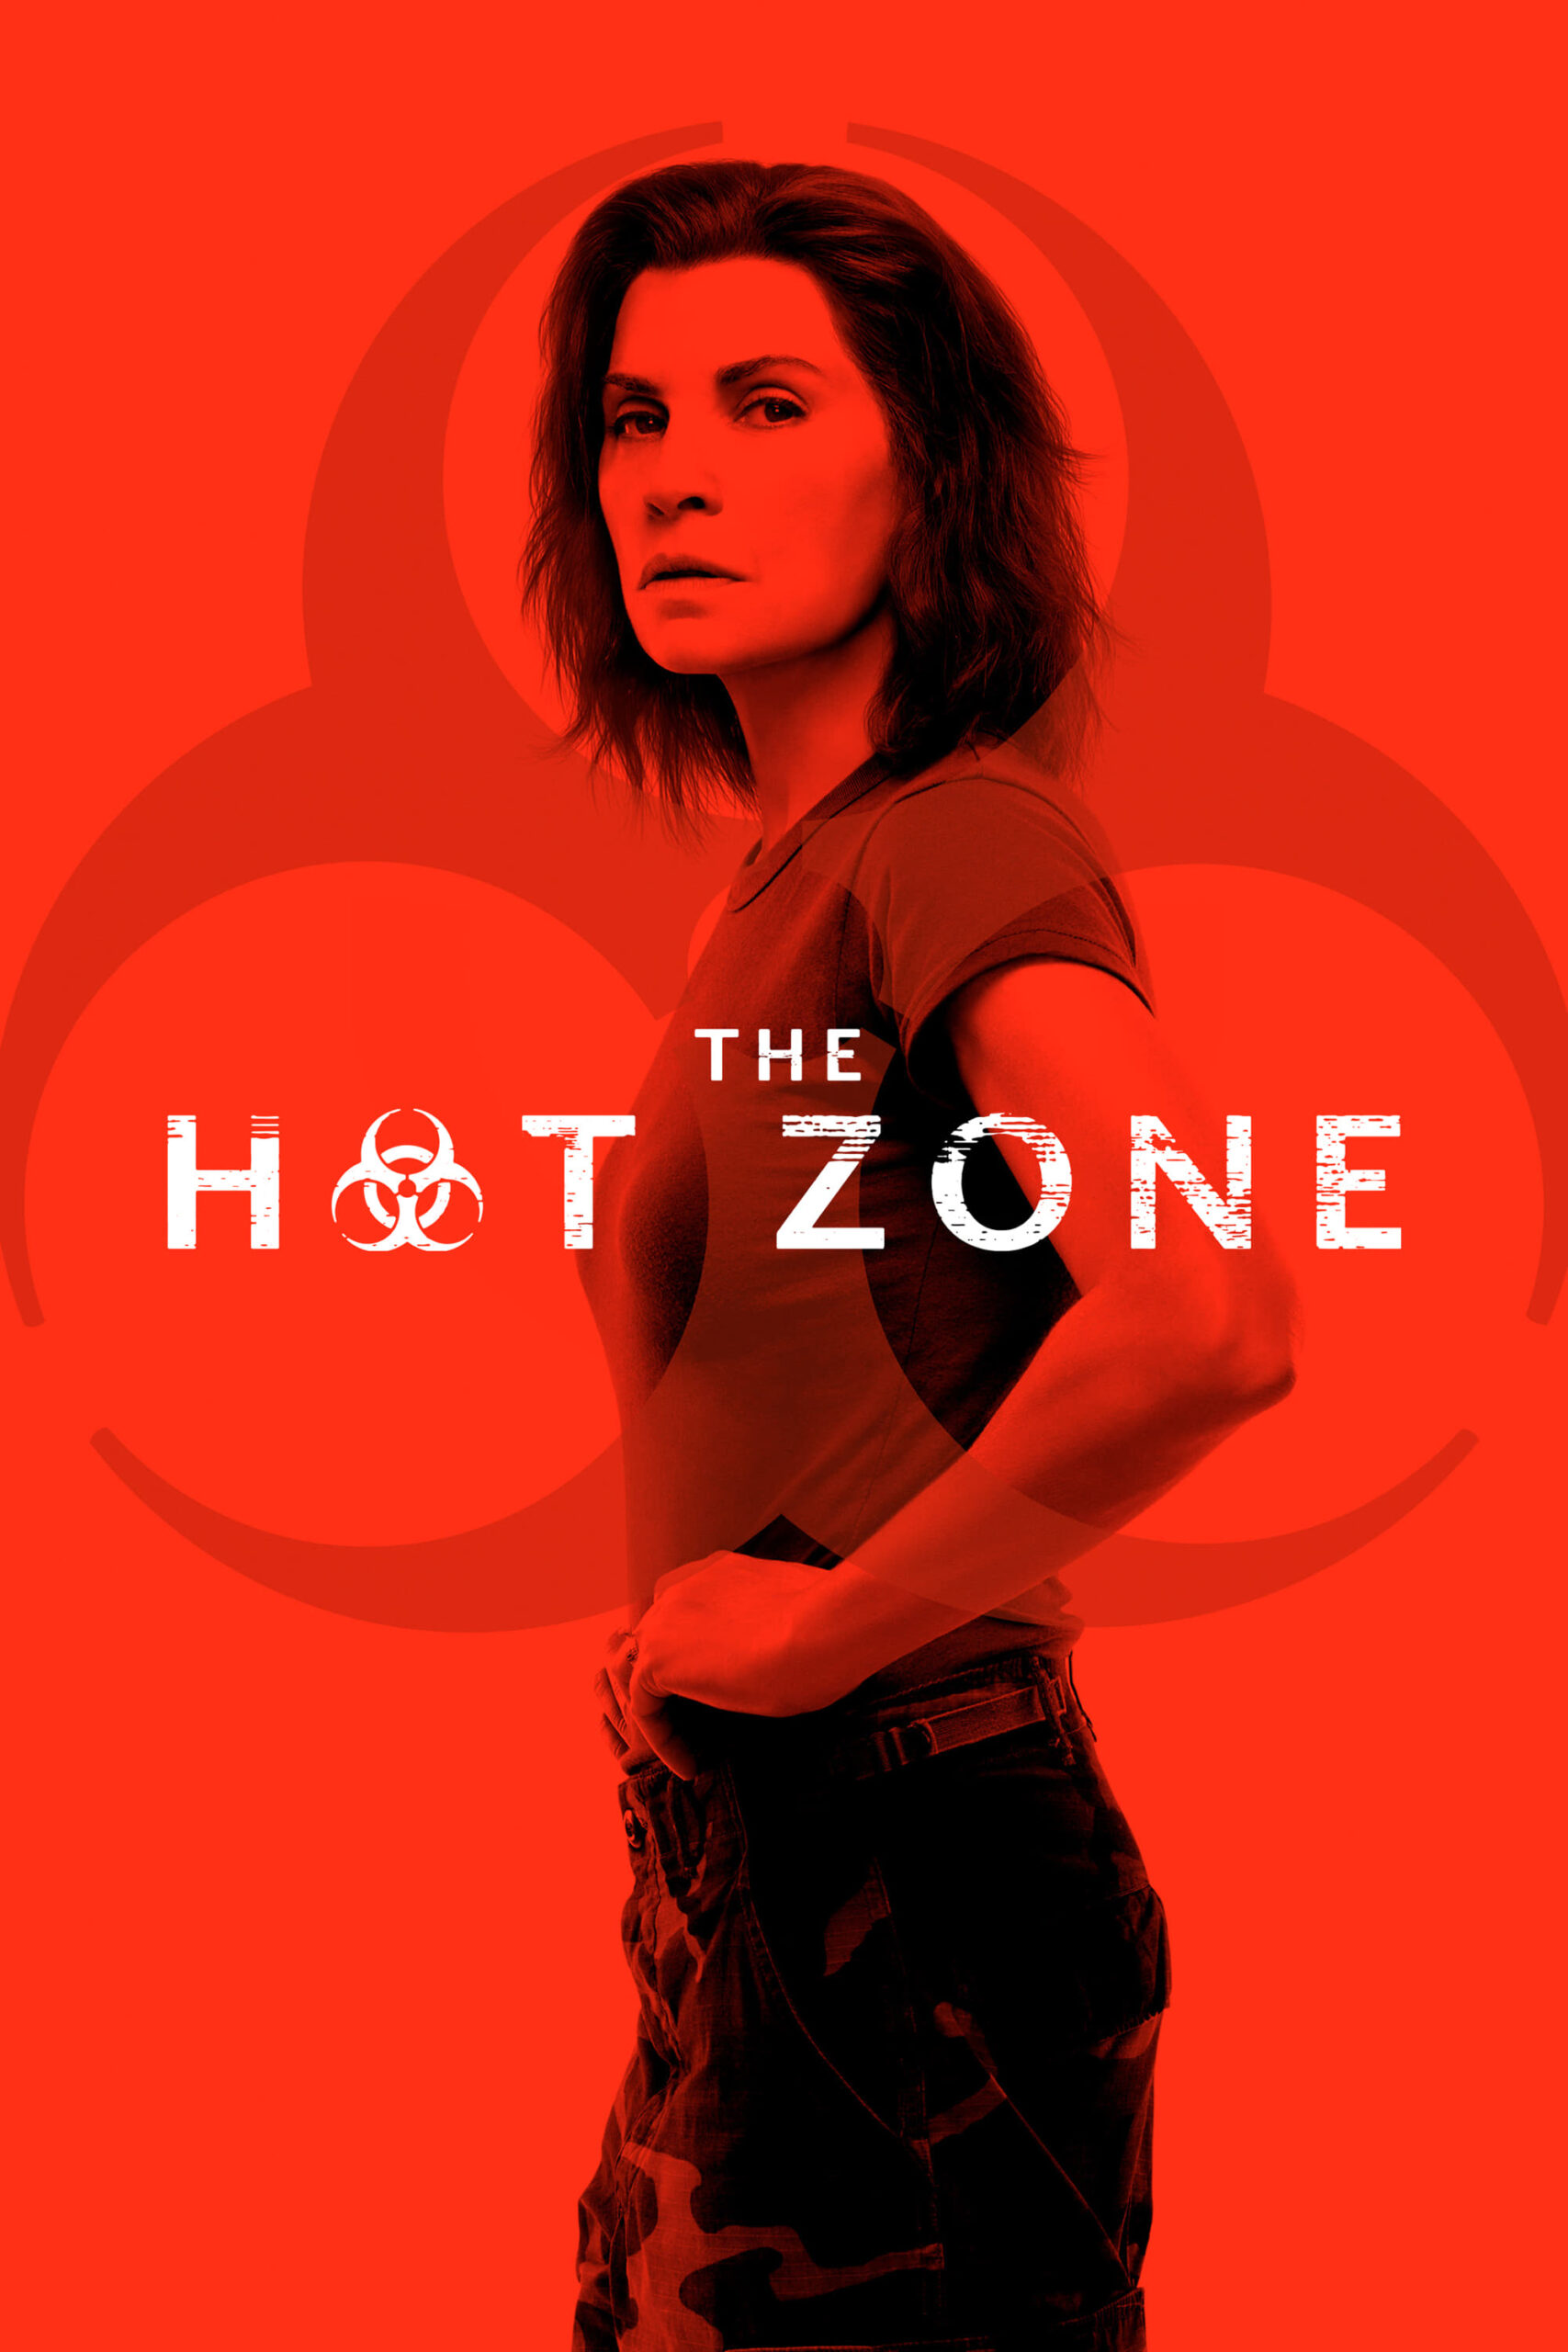 Plakát pro film “The Hot Zone”